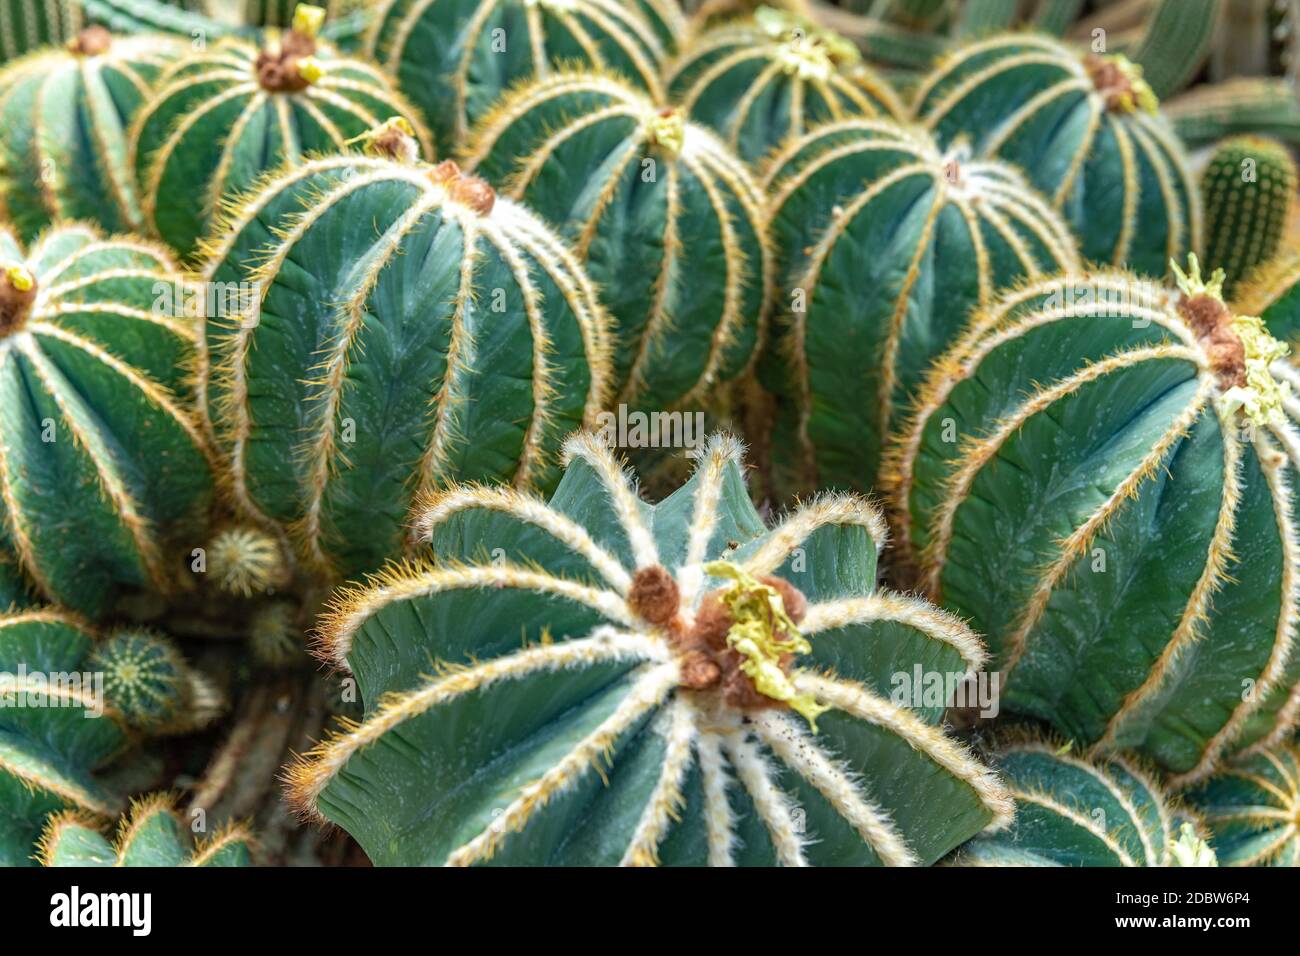 Parodia magnifica, Eriocactus magnificus cactus in a botanical garden. Stock Photo